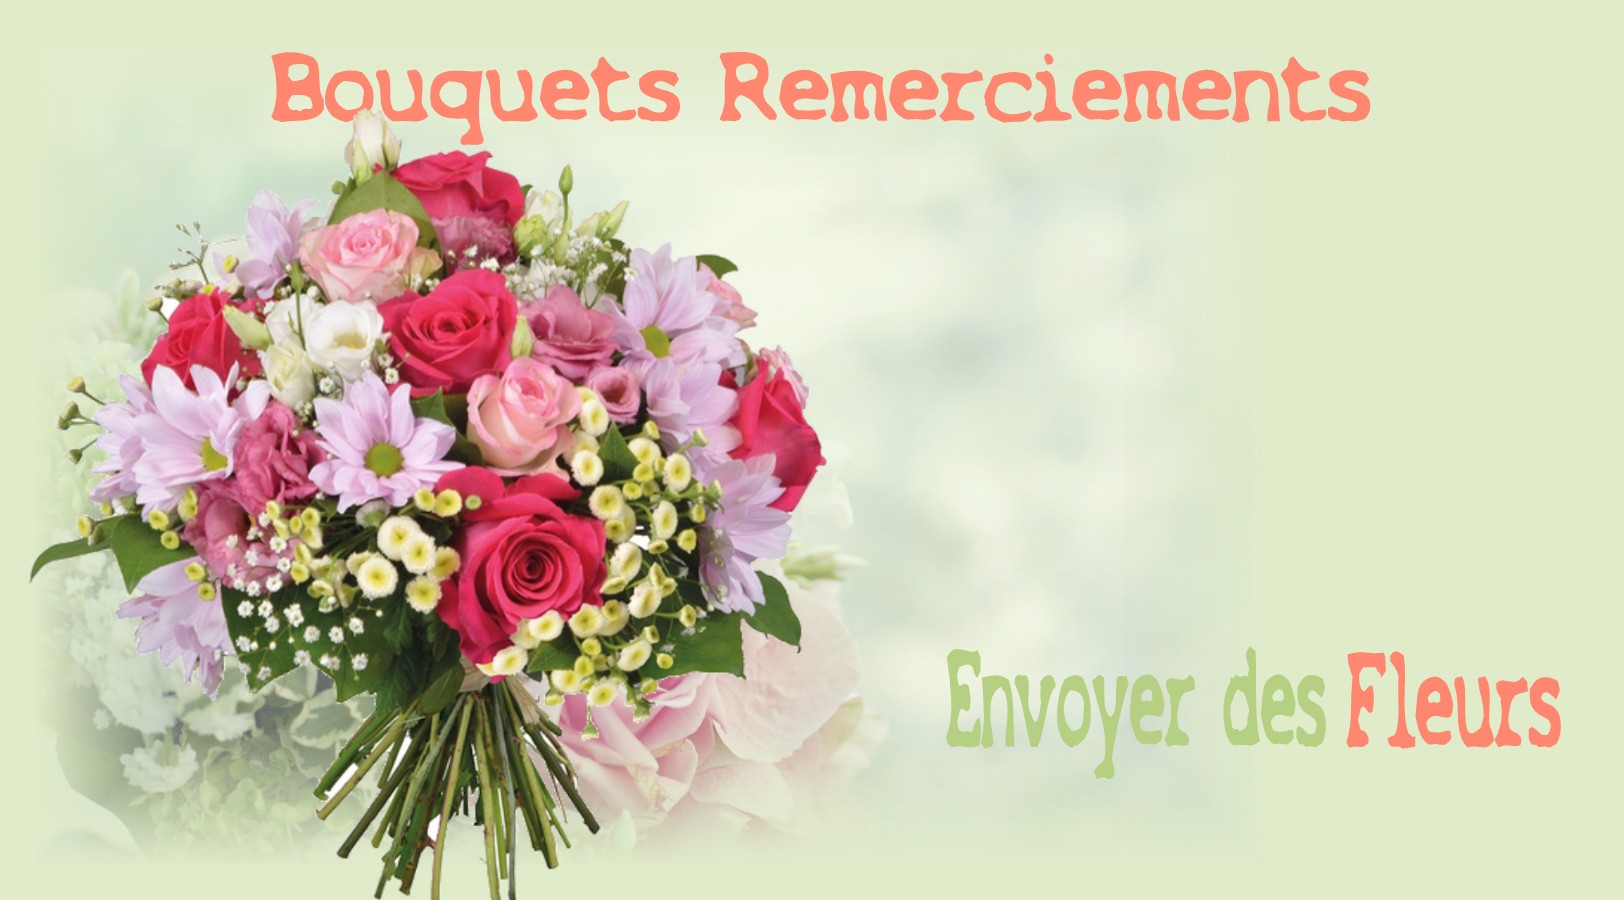 FLEURS POUR REMERCIEMENTS - FLEURISTE BORDEAUX (33) - ENVOYER DES FLEURS